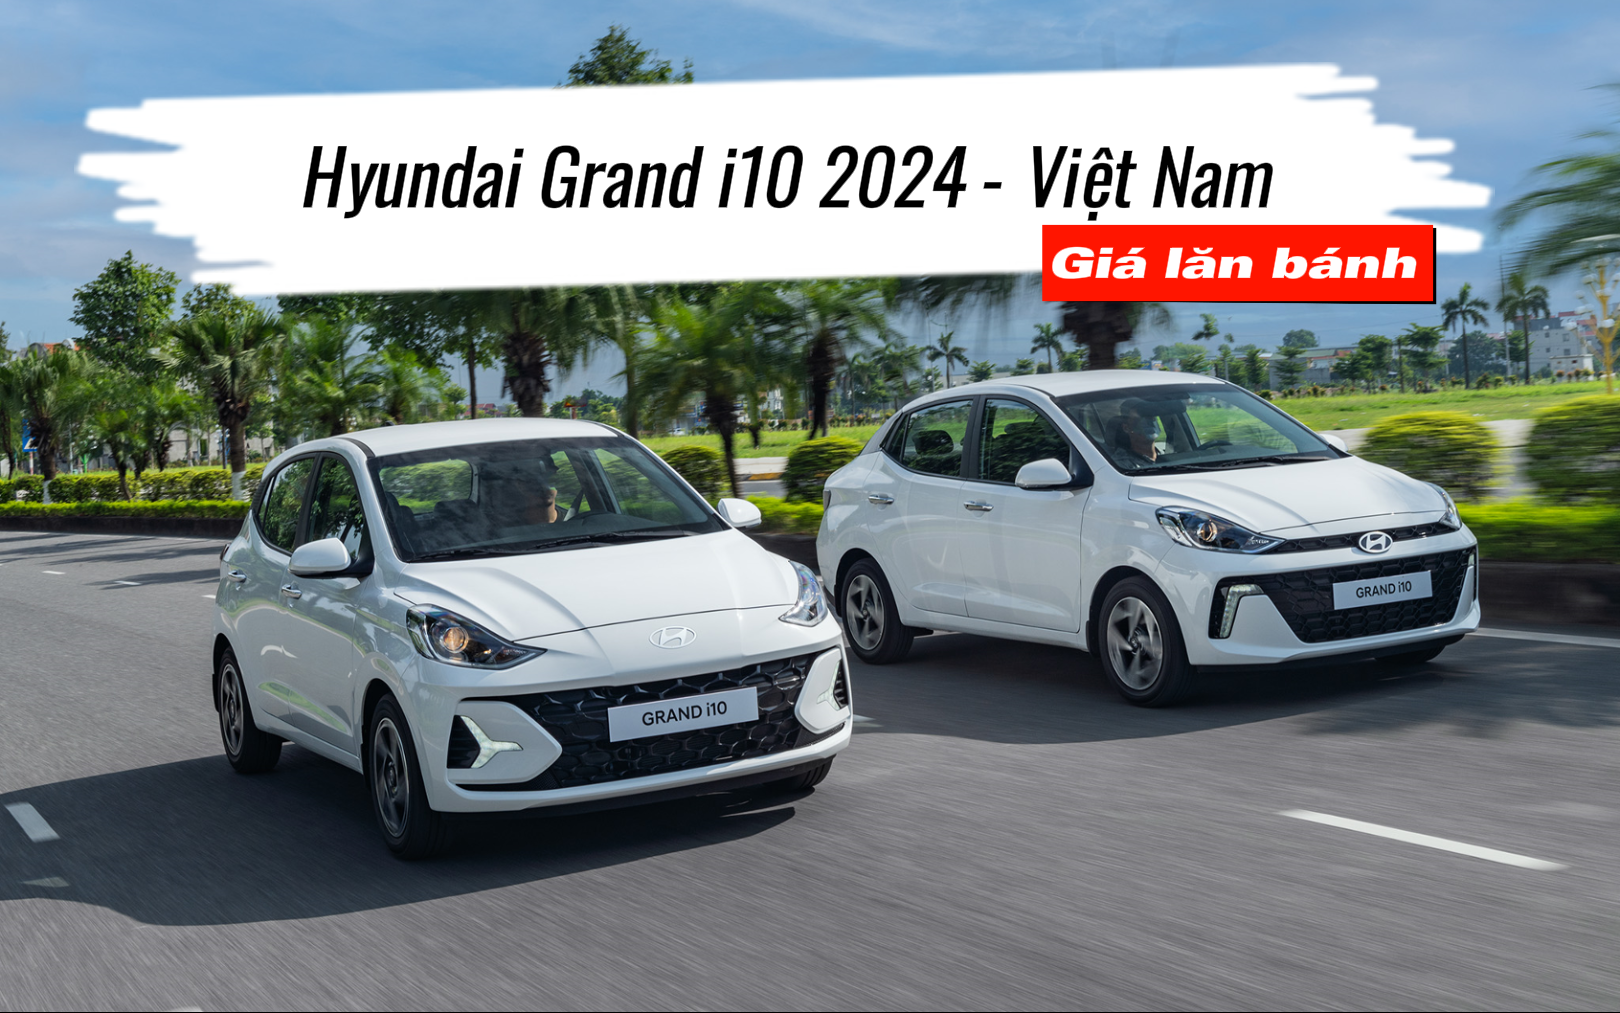 Hyundai Grand i10 2024 ra mắt: Giá lăn bánh có đủ hấp dẫn?